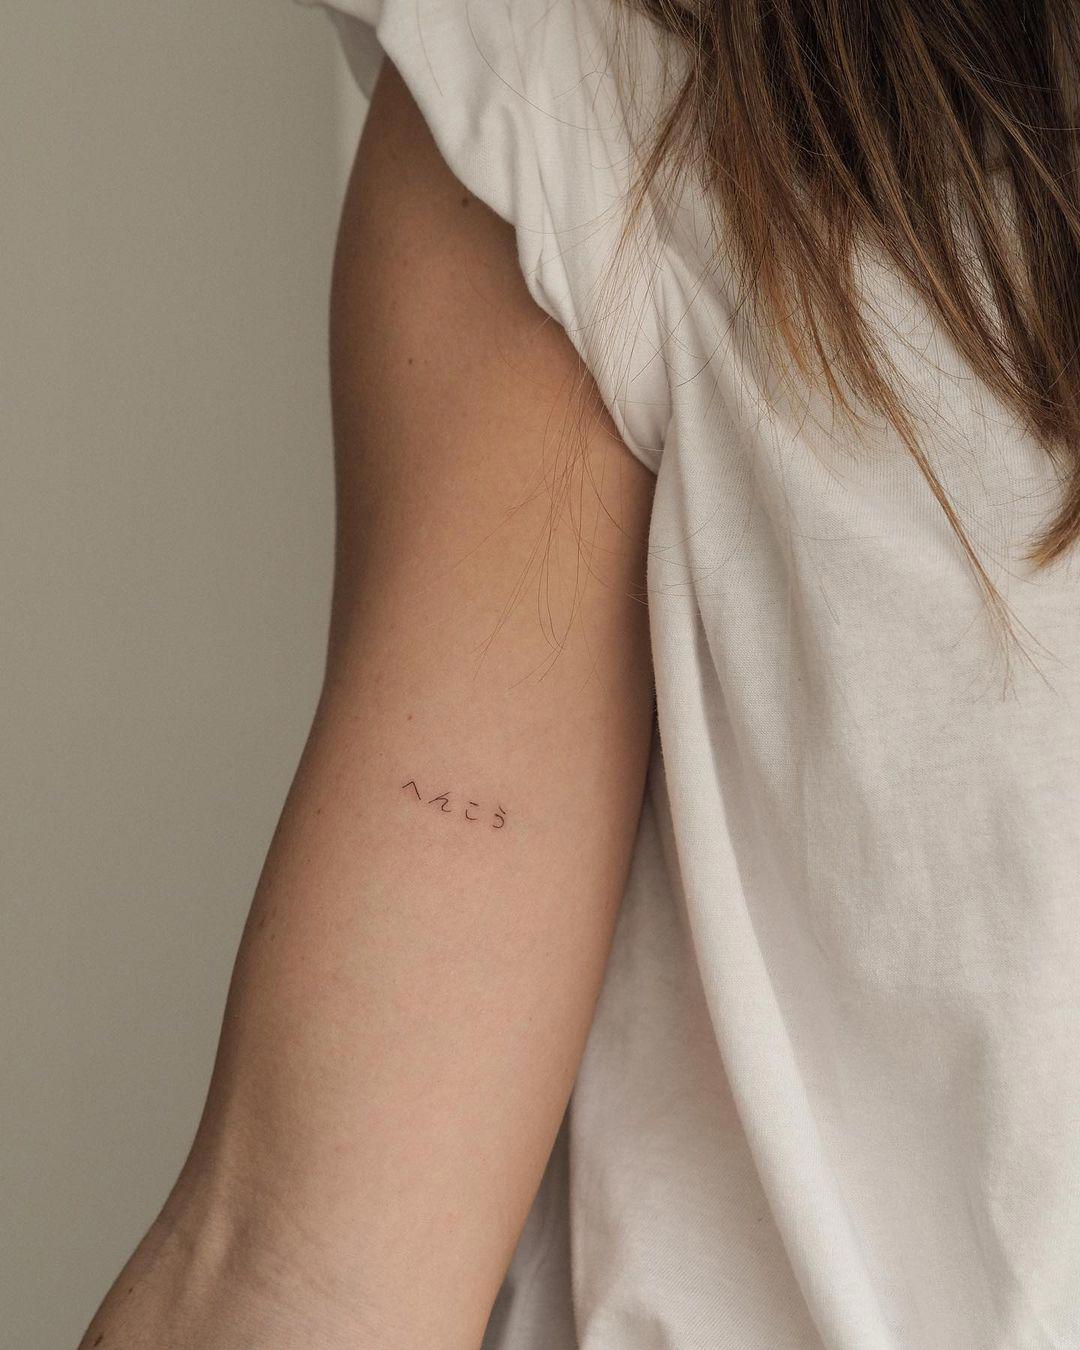 Tatuaje en el brazo con letras japonesas